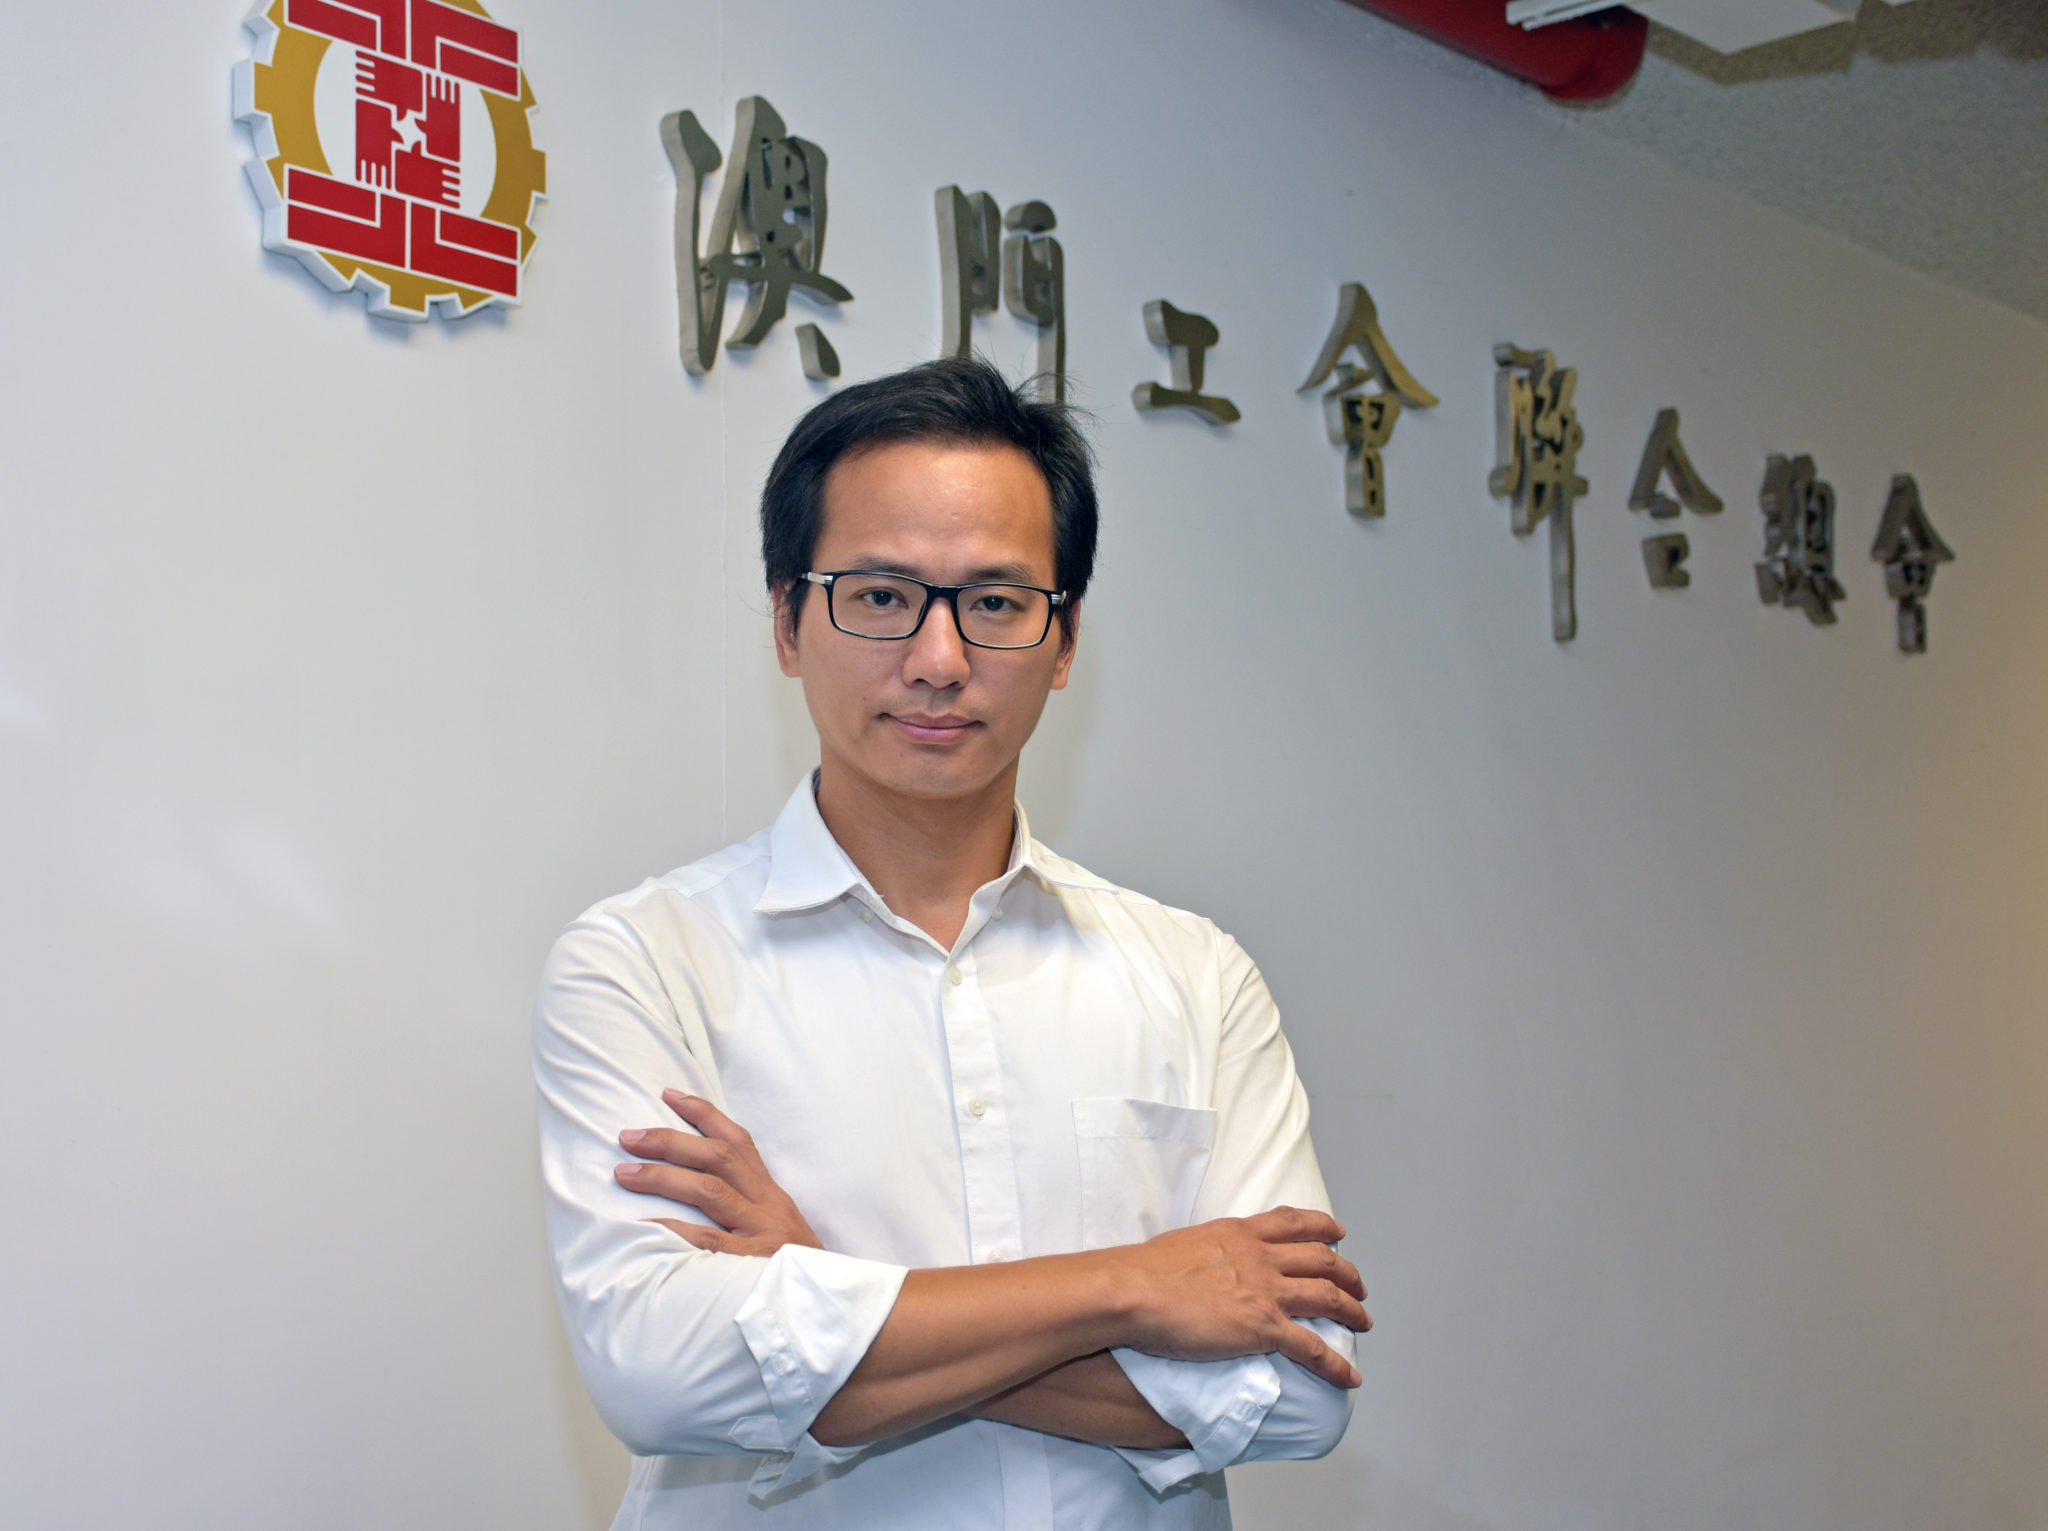 Cartas de condução | Leong Sun Iok quer debate na AL